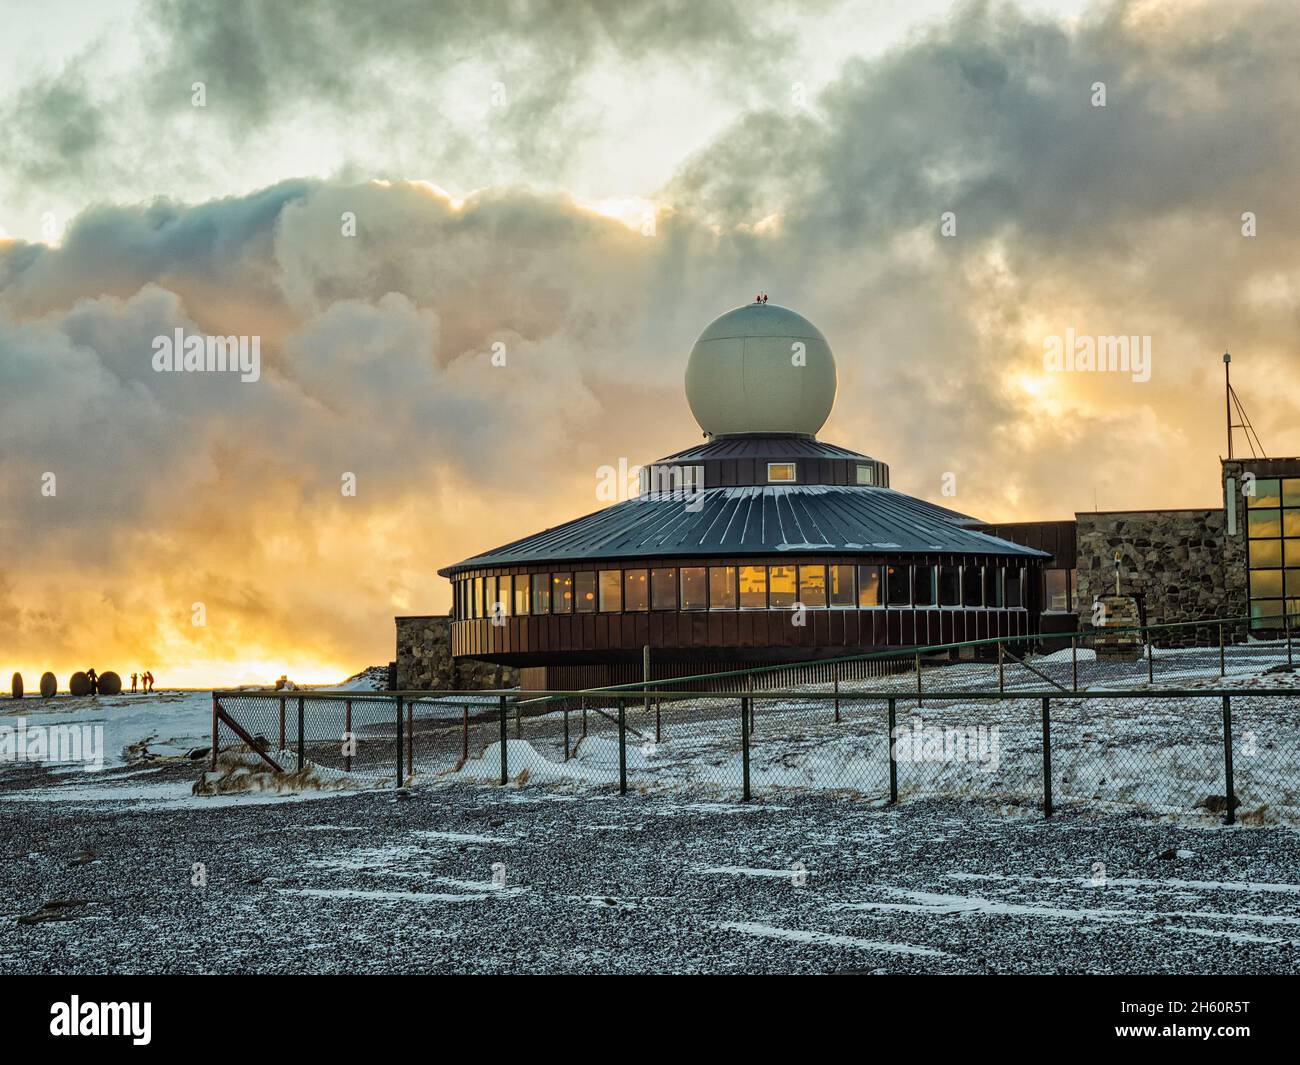 Das Nordkap ist der offiziell nördlichste Punkt Europas. Aufnahme bei Sonnenuntergang, gerade als ein Schneesturm weht und einen dramatischen Himmel erzeugt. Stockfoto